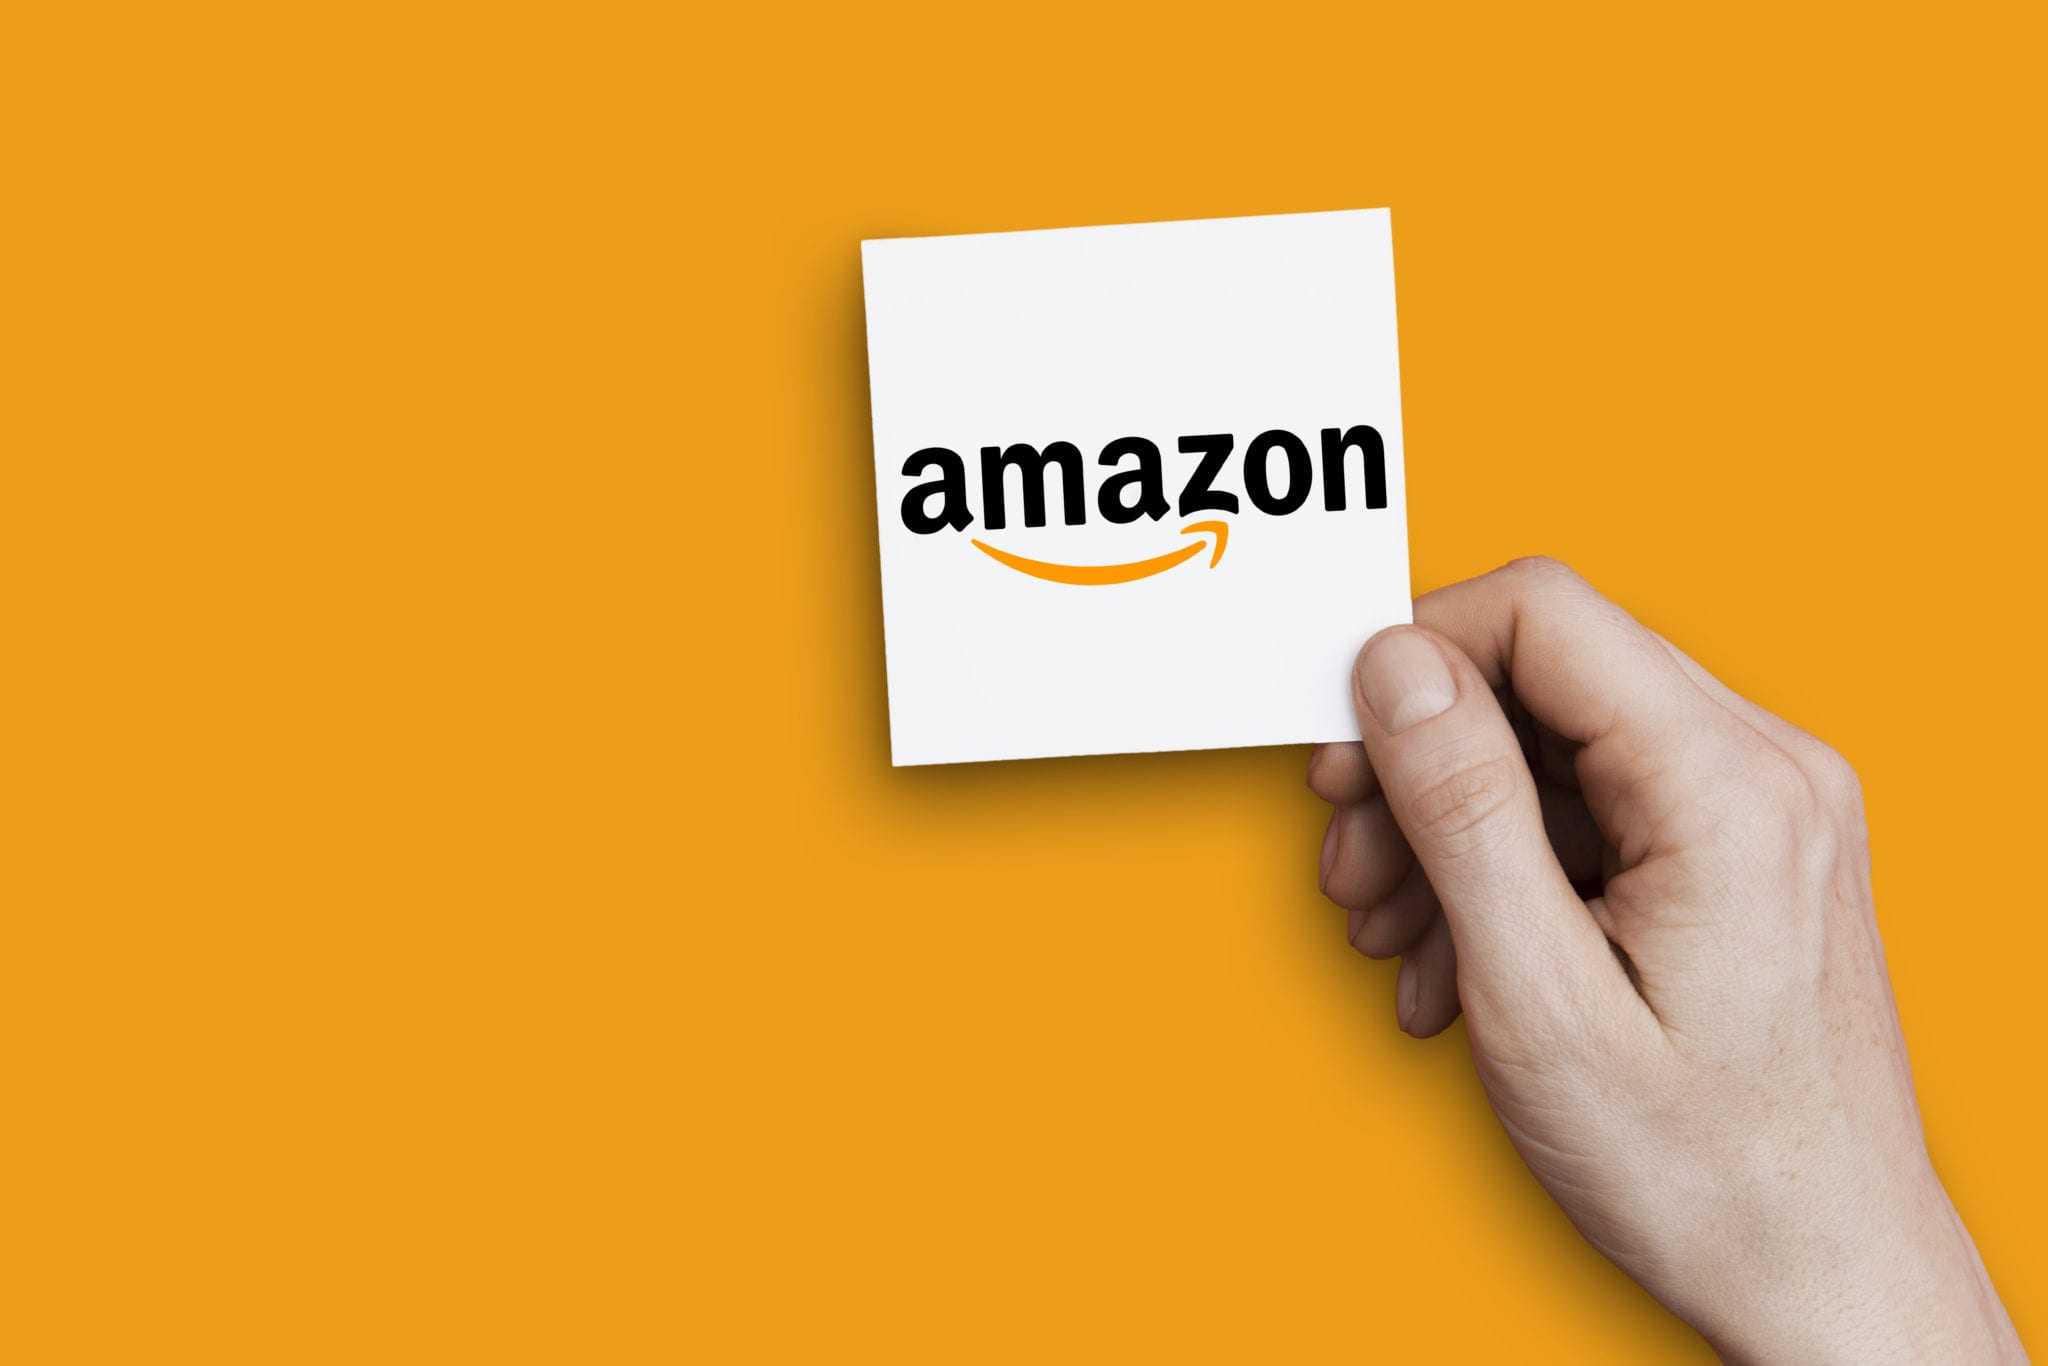 Hand holding Amazon logo